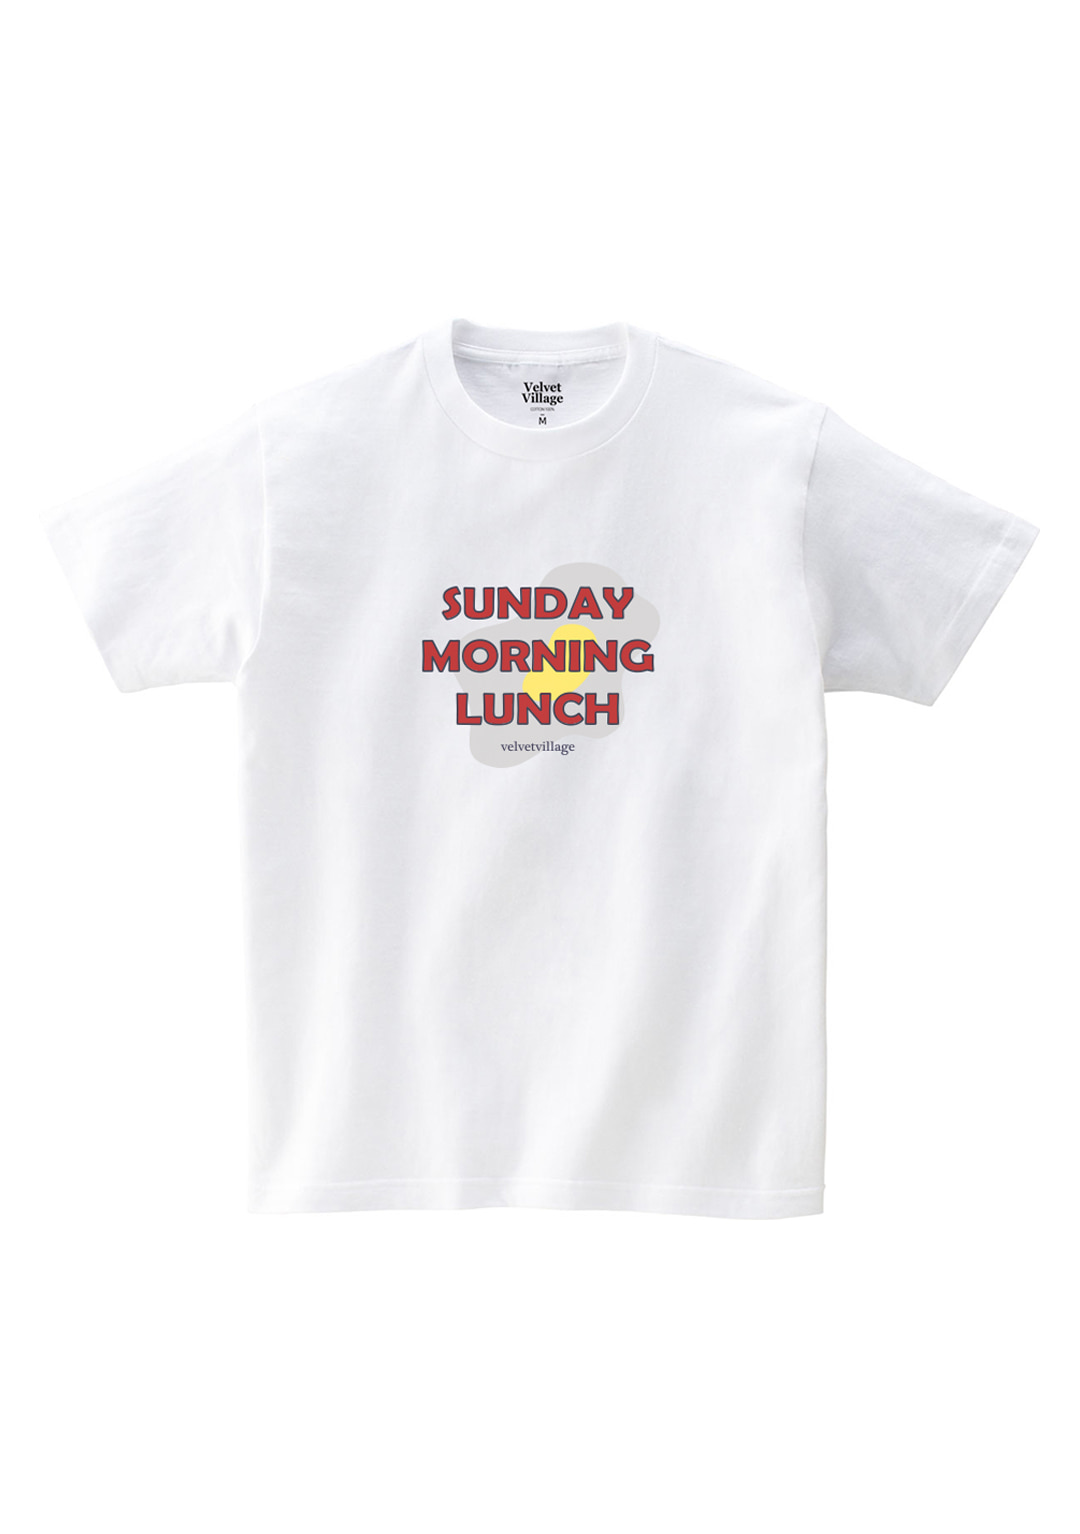 Sundaymorning T-shirt (White)